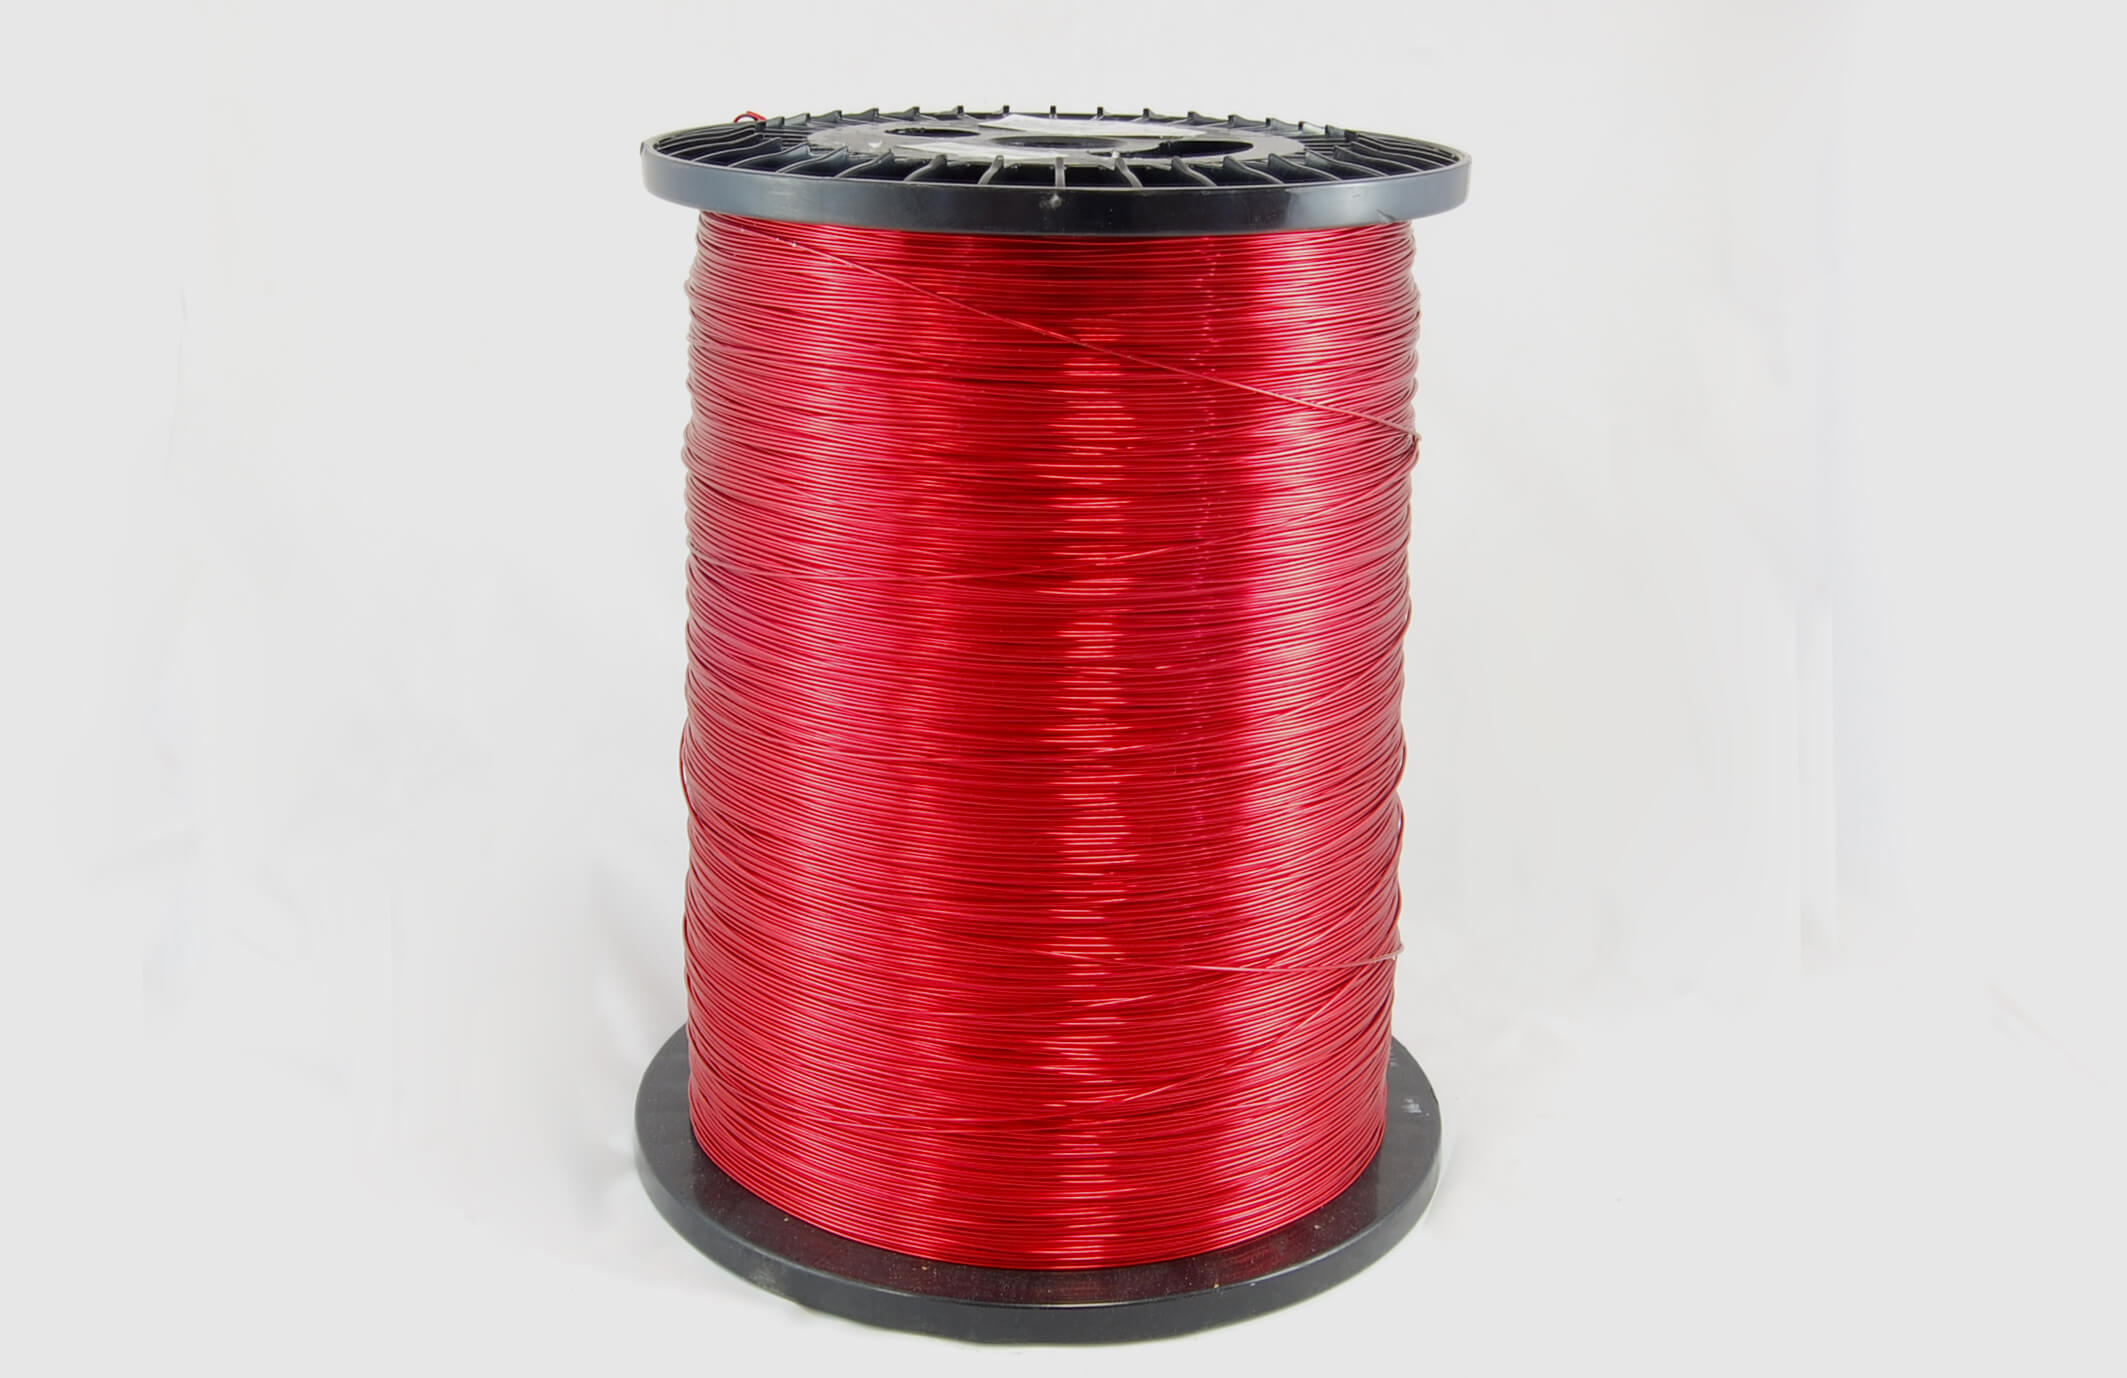 #16 Single Nysol  Round SNSR MW 80 Copper Magnet Wire 155°C, red, 85 LB box (average wght.)